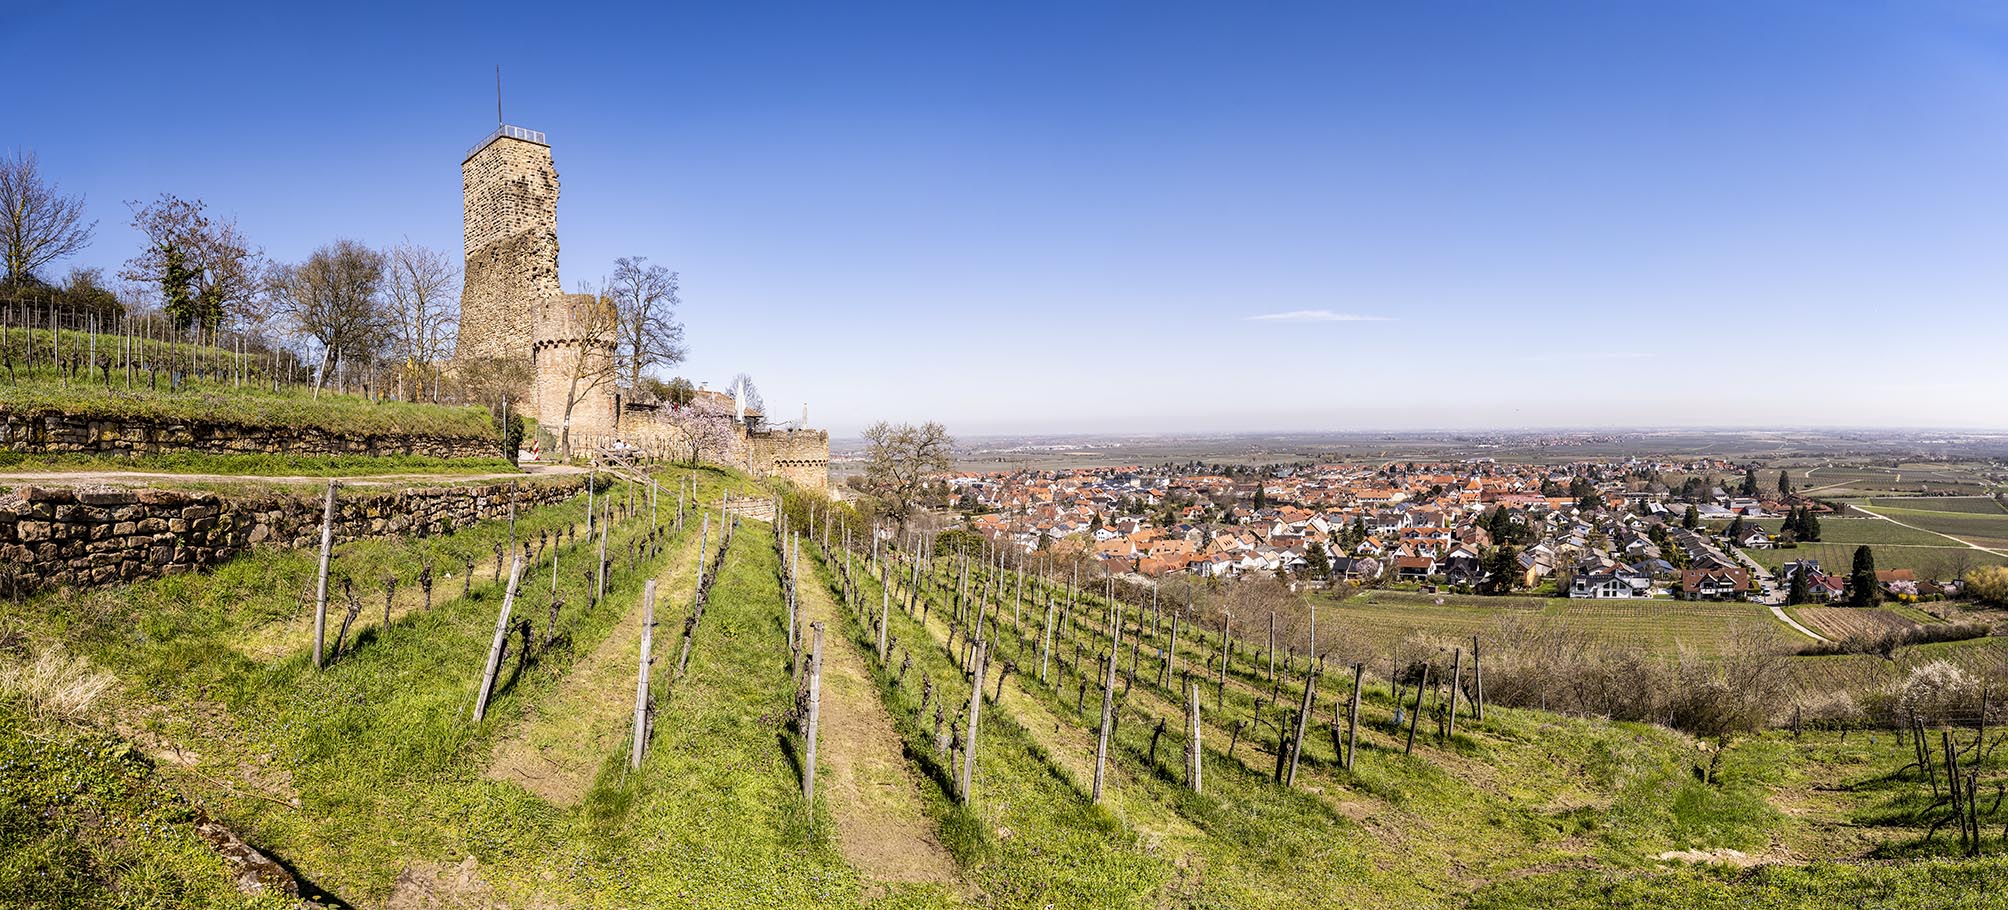 Burgruine hinter kahlem Weinberg vor blauem Himmel, im Hintergrund bergab ein Dorf